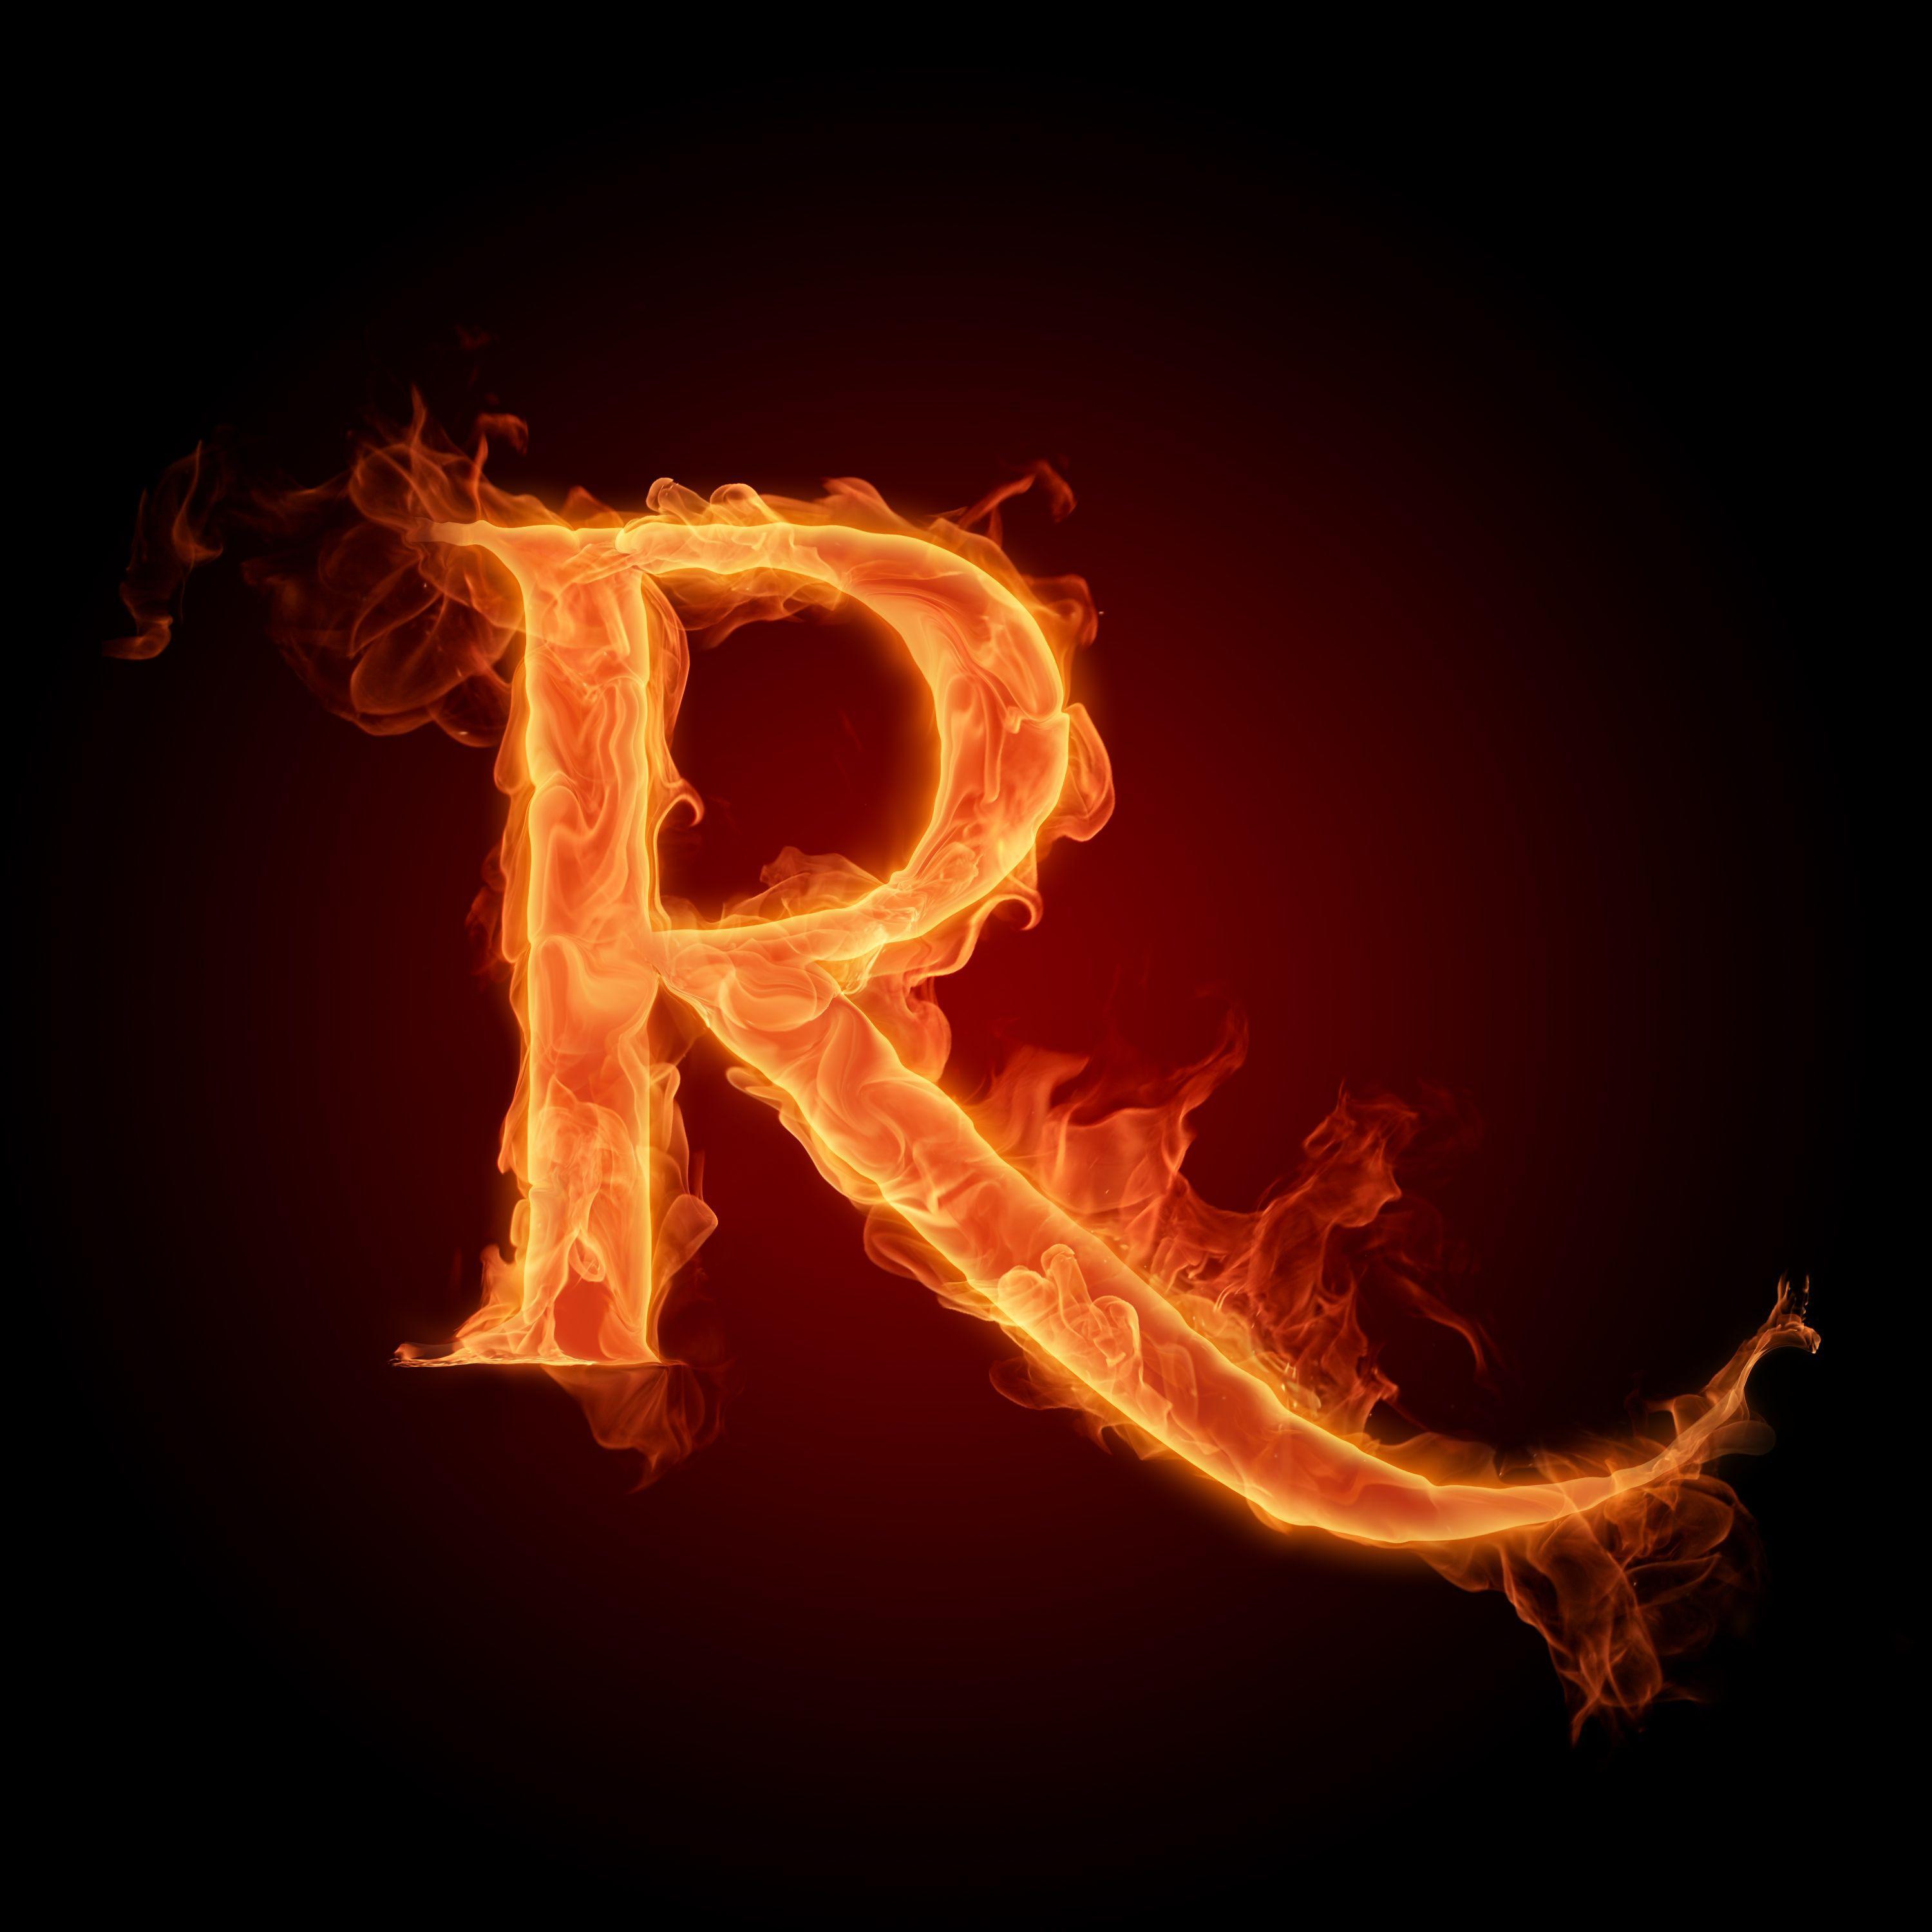 حرف r مزخرف , تصاميم حرف R - صور حب